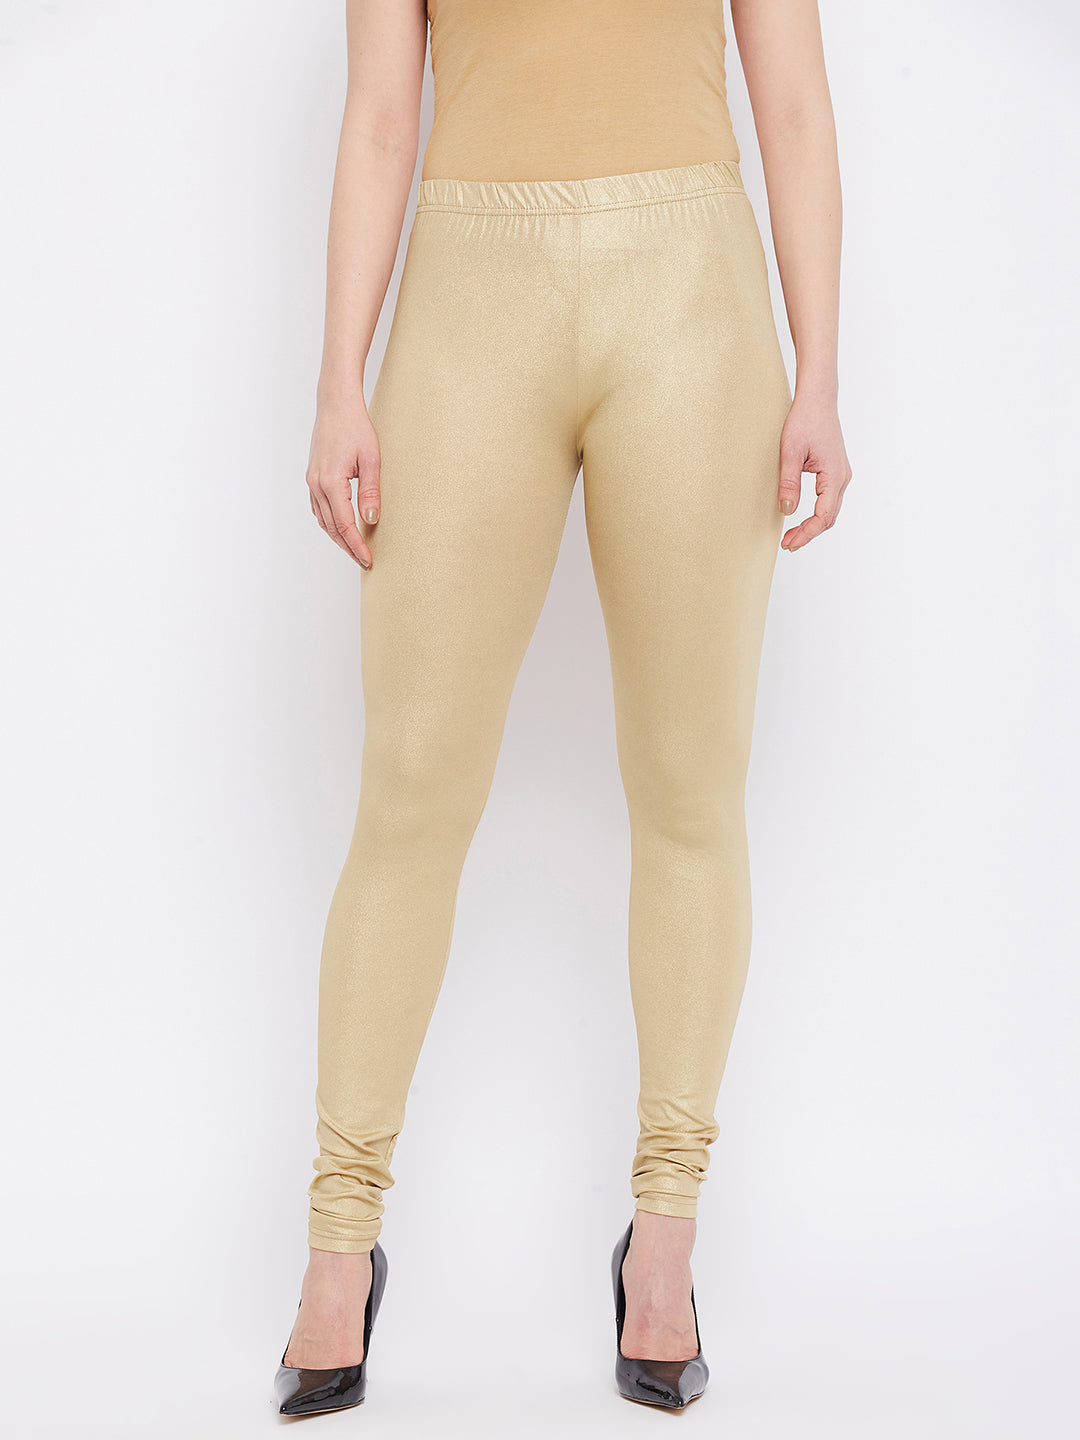 Shimmer Medium Gold Leggings  shimmer leggings gold – The Pajama